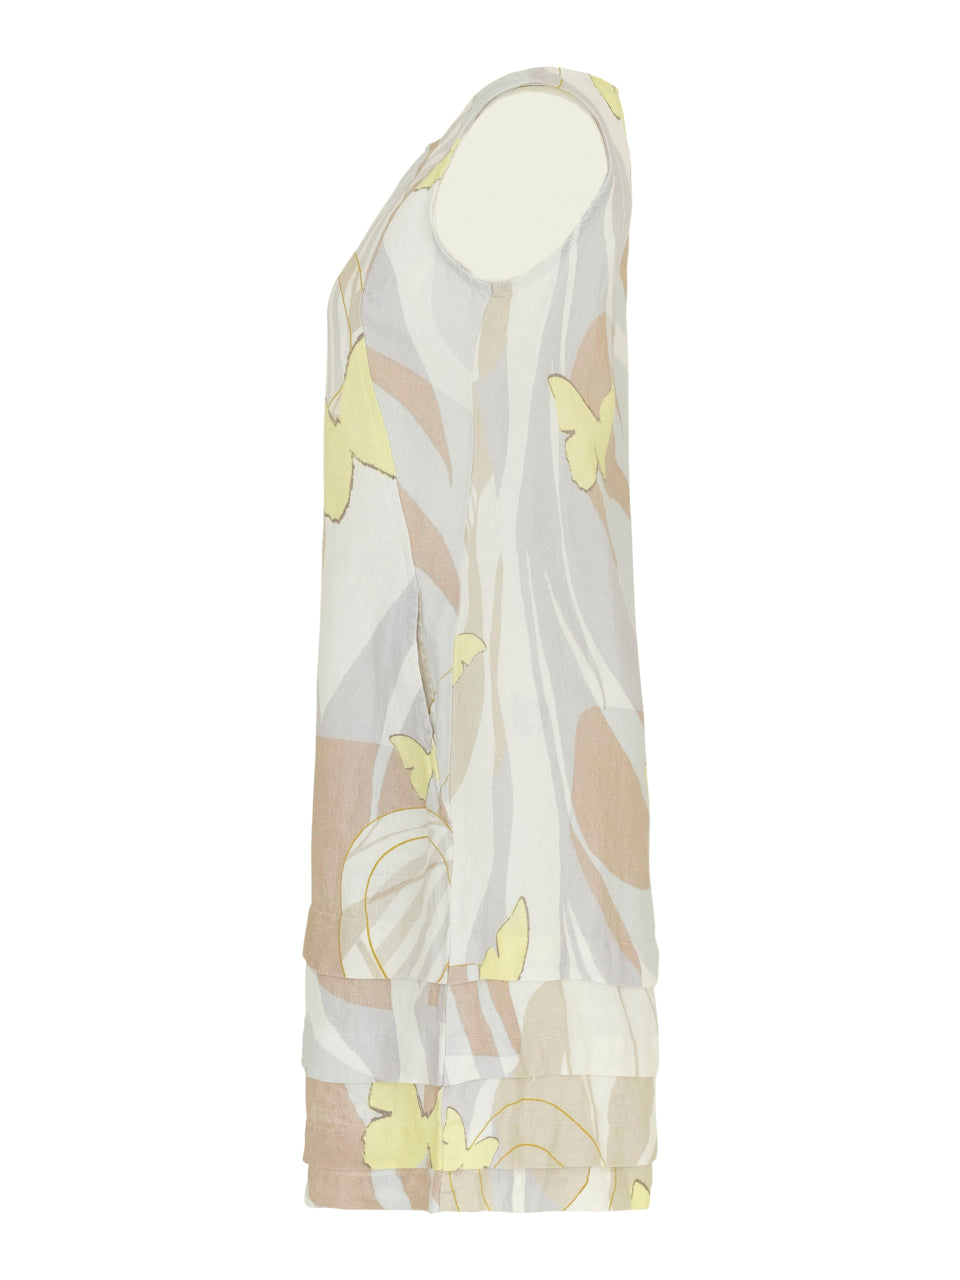 Simply Art by Dolcezza - Linen dress - Yellow Butterflies